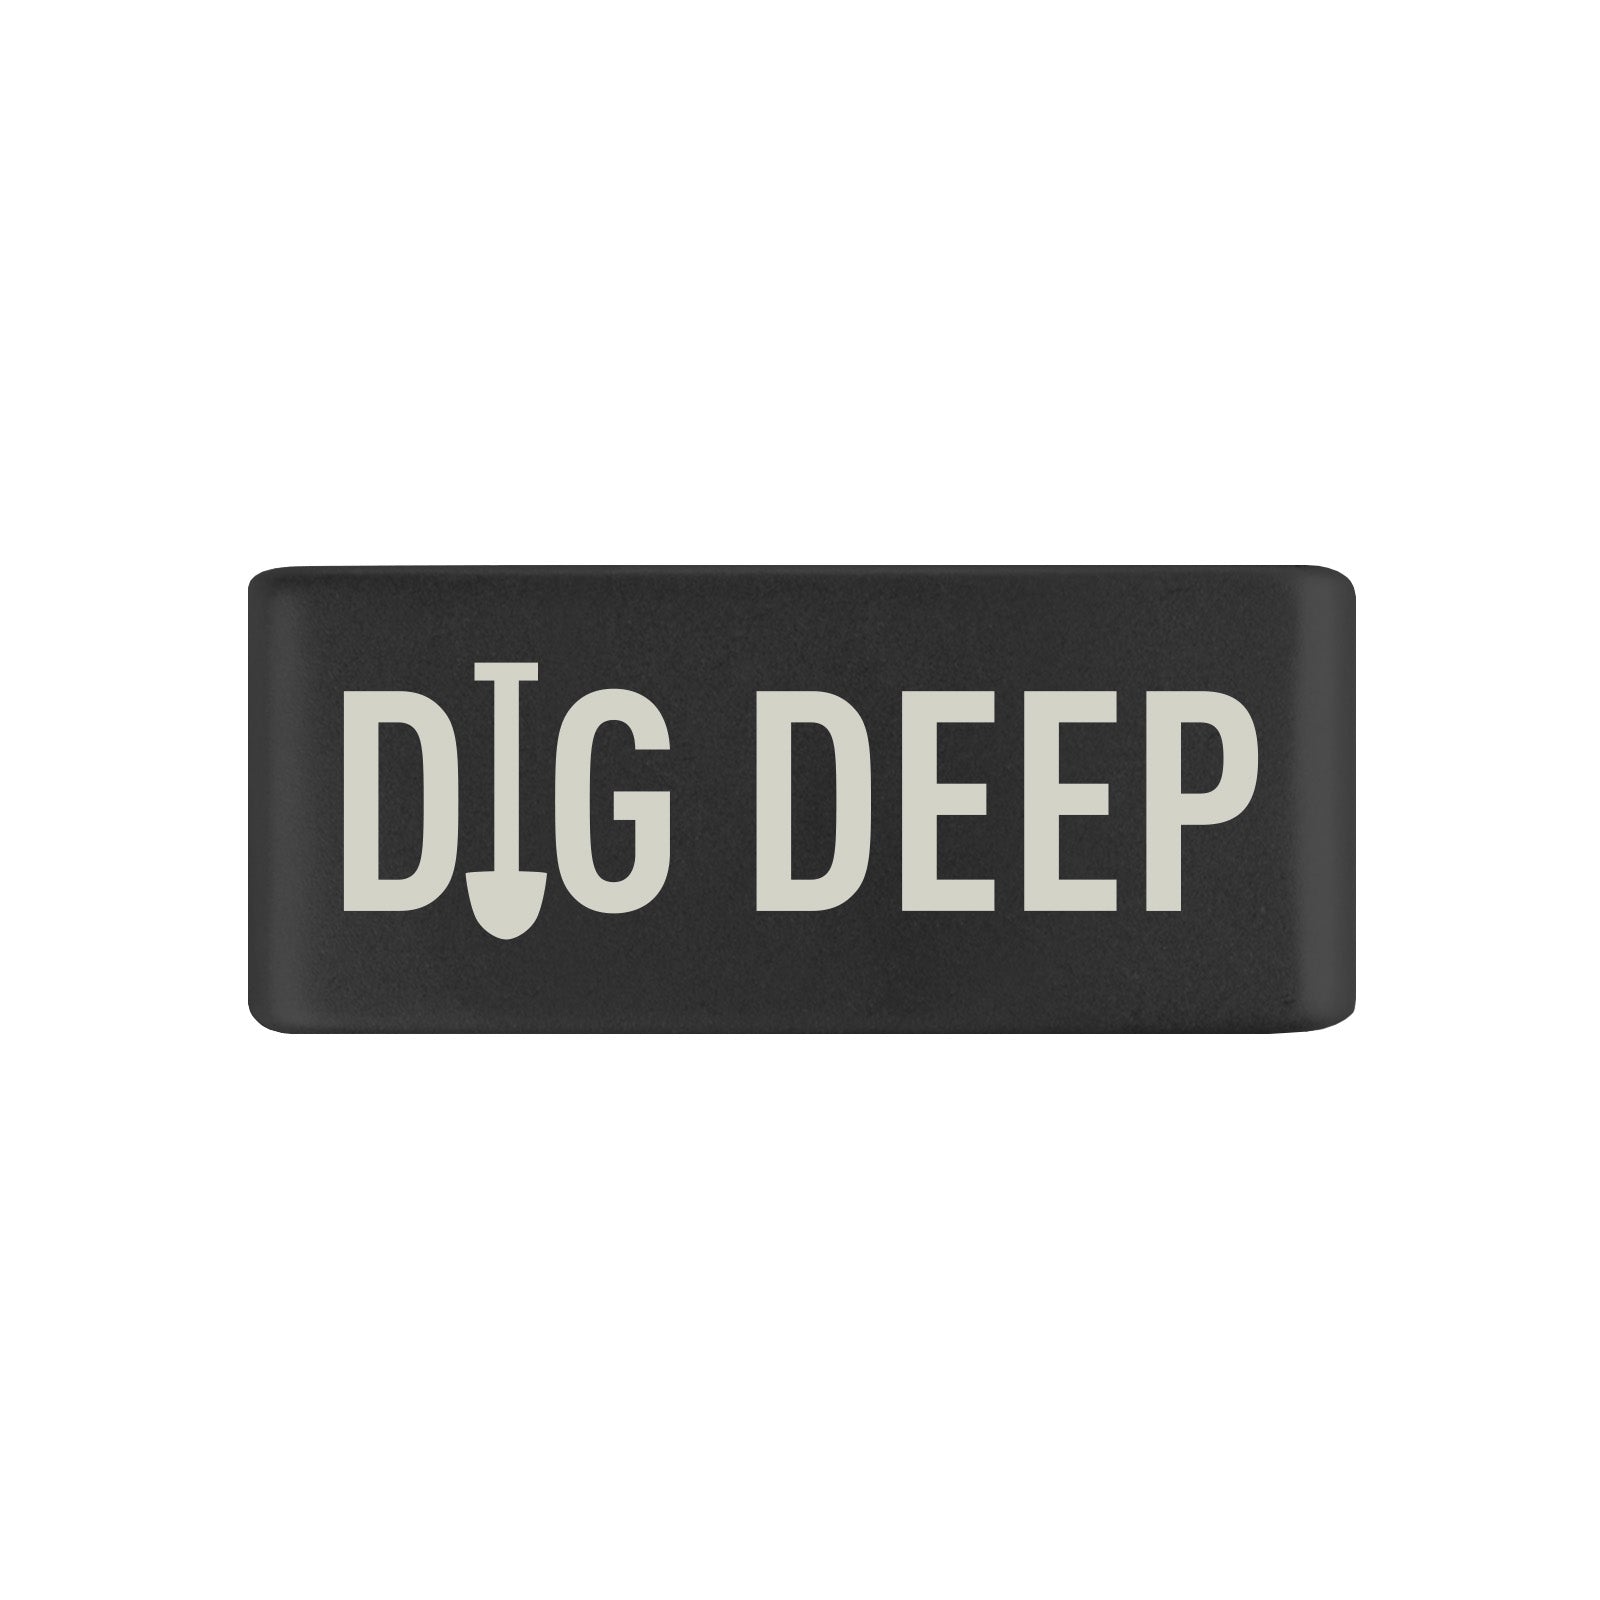 Dig Deep Badge Badge 13mm - ROAD iD